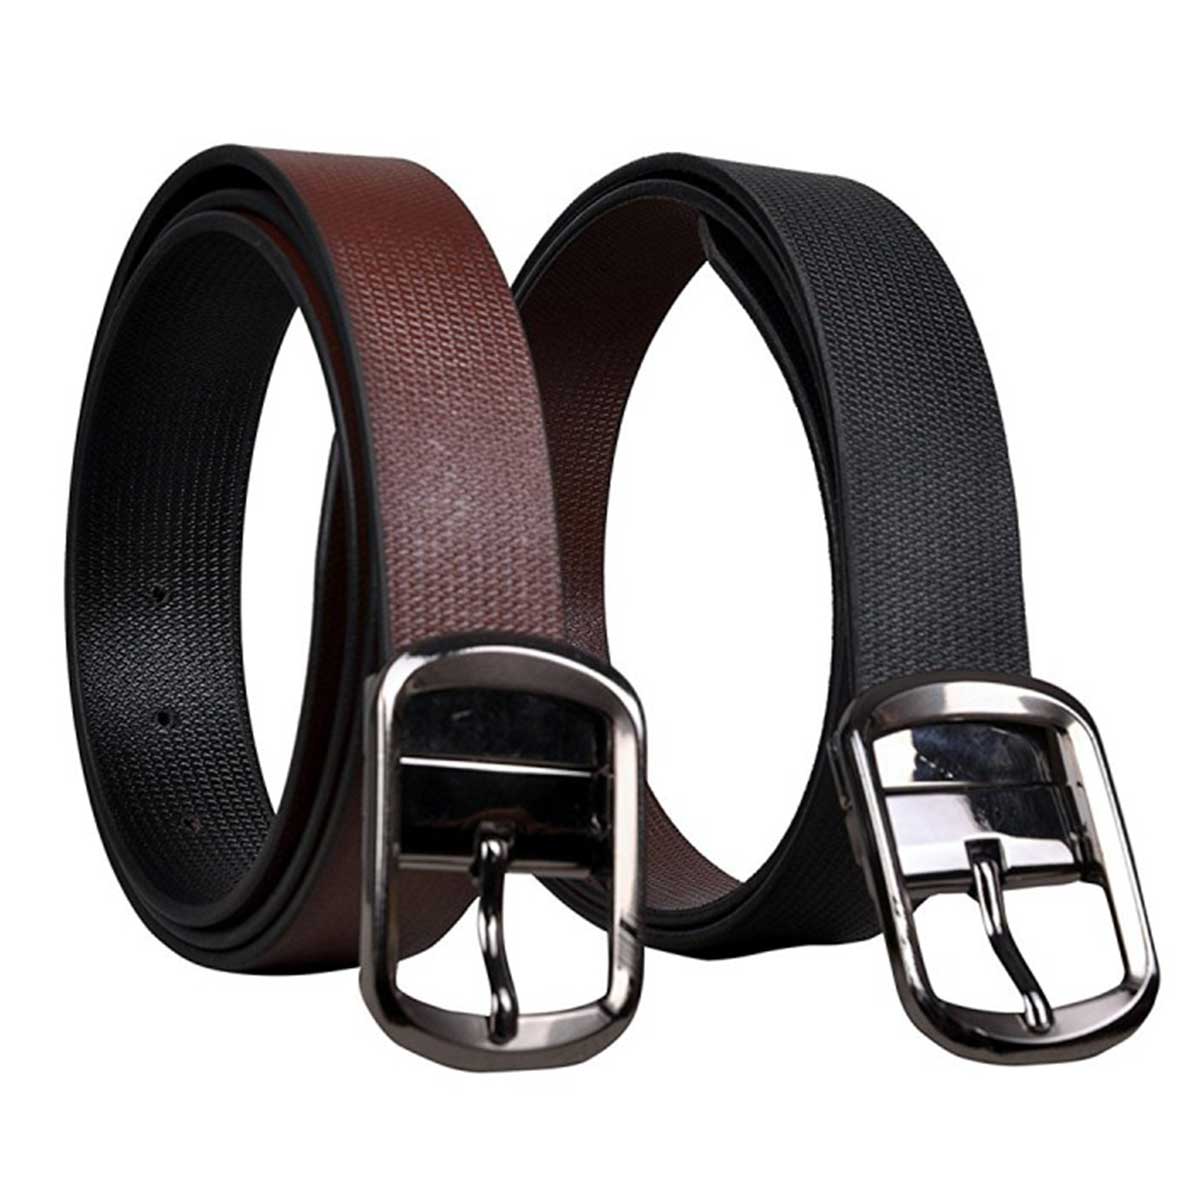 Reversible Genuine Leather Formal Belts | Black, Brown Belt For Men